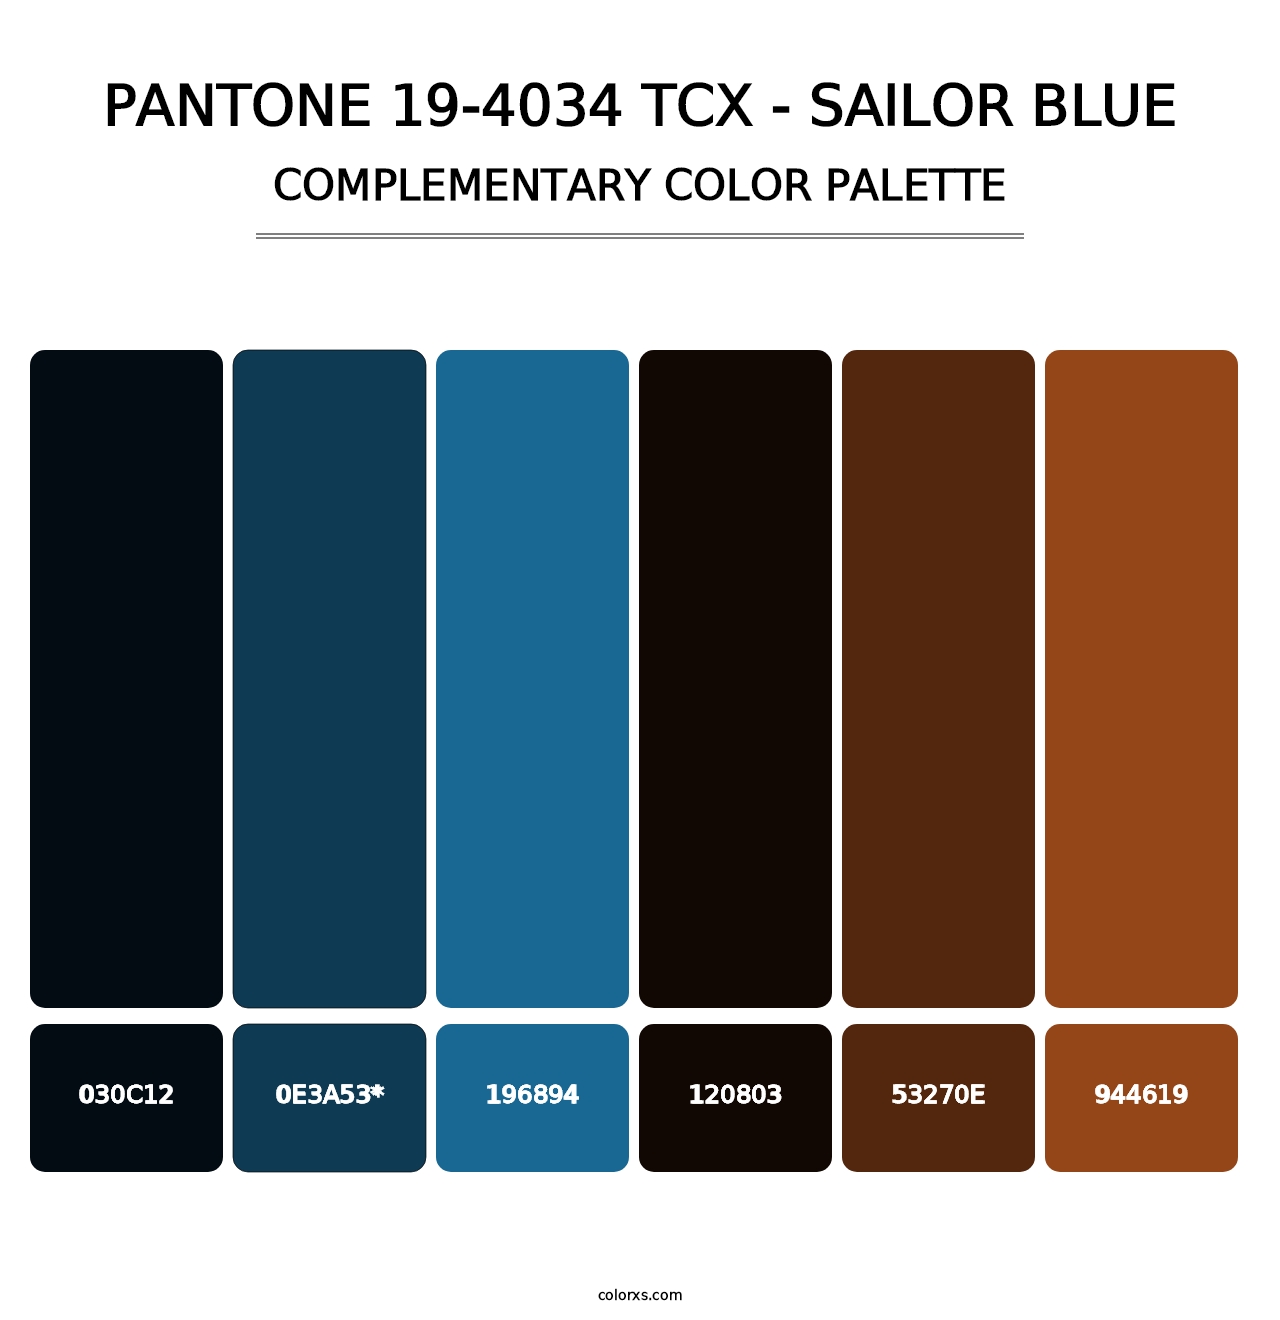 PANTONE 19-4034 TCX - Sailor Blue - Complementary Color Palette